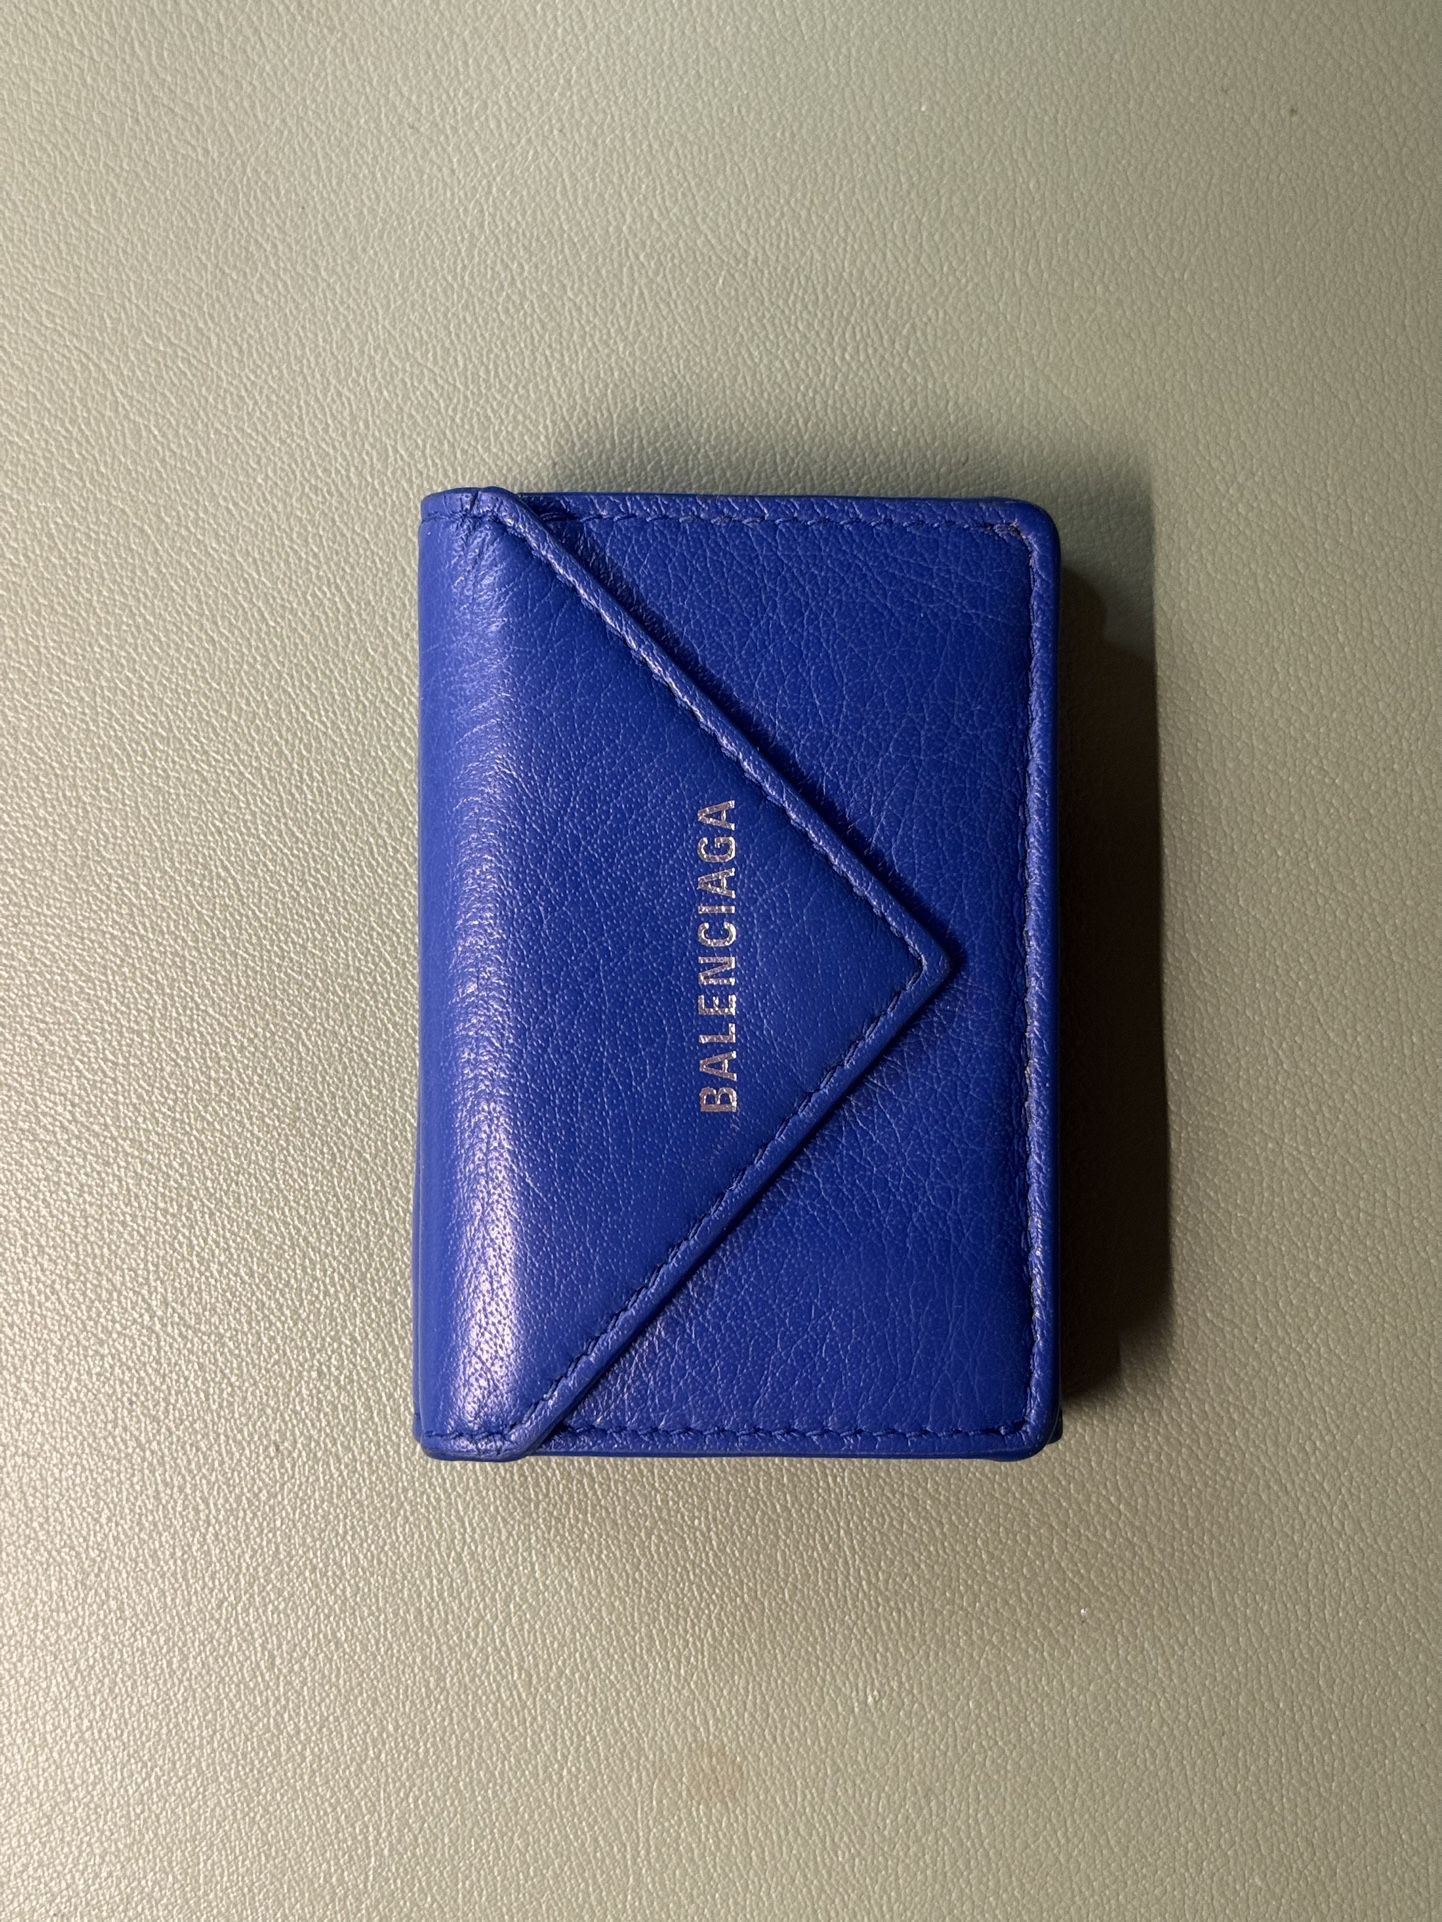 Balenciaga Mini Wallet